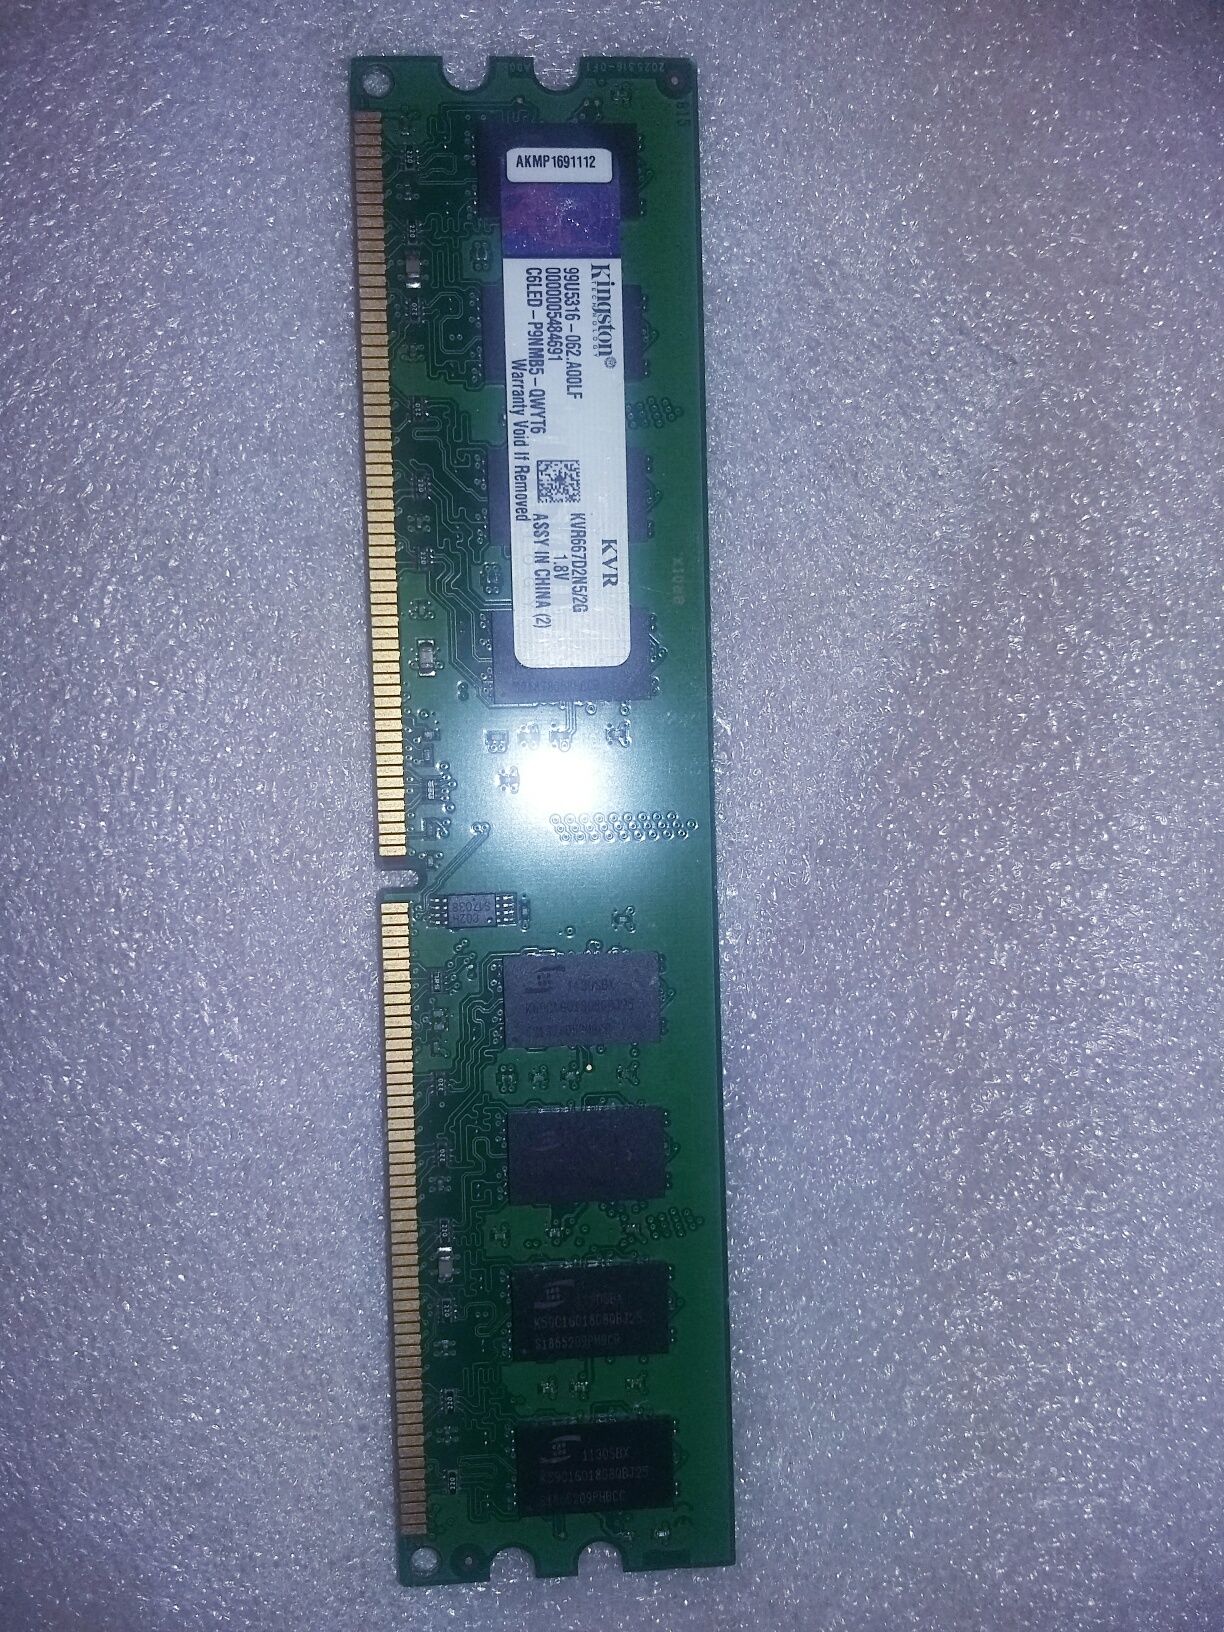 Memória ram 2GB DDR2